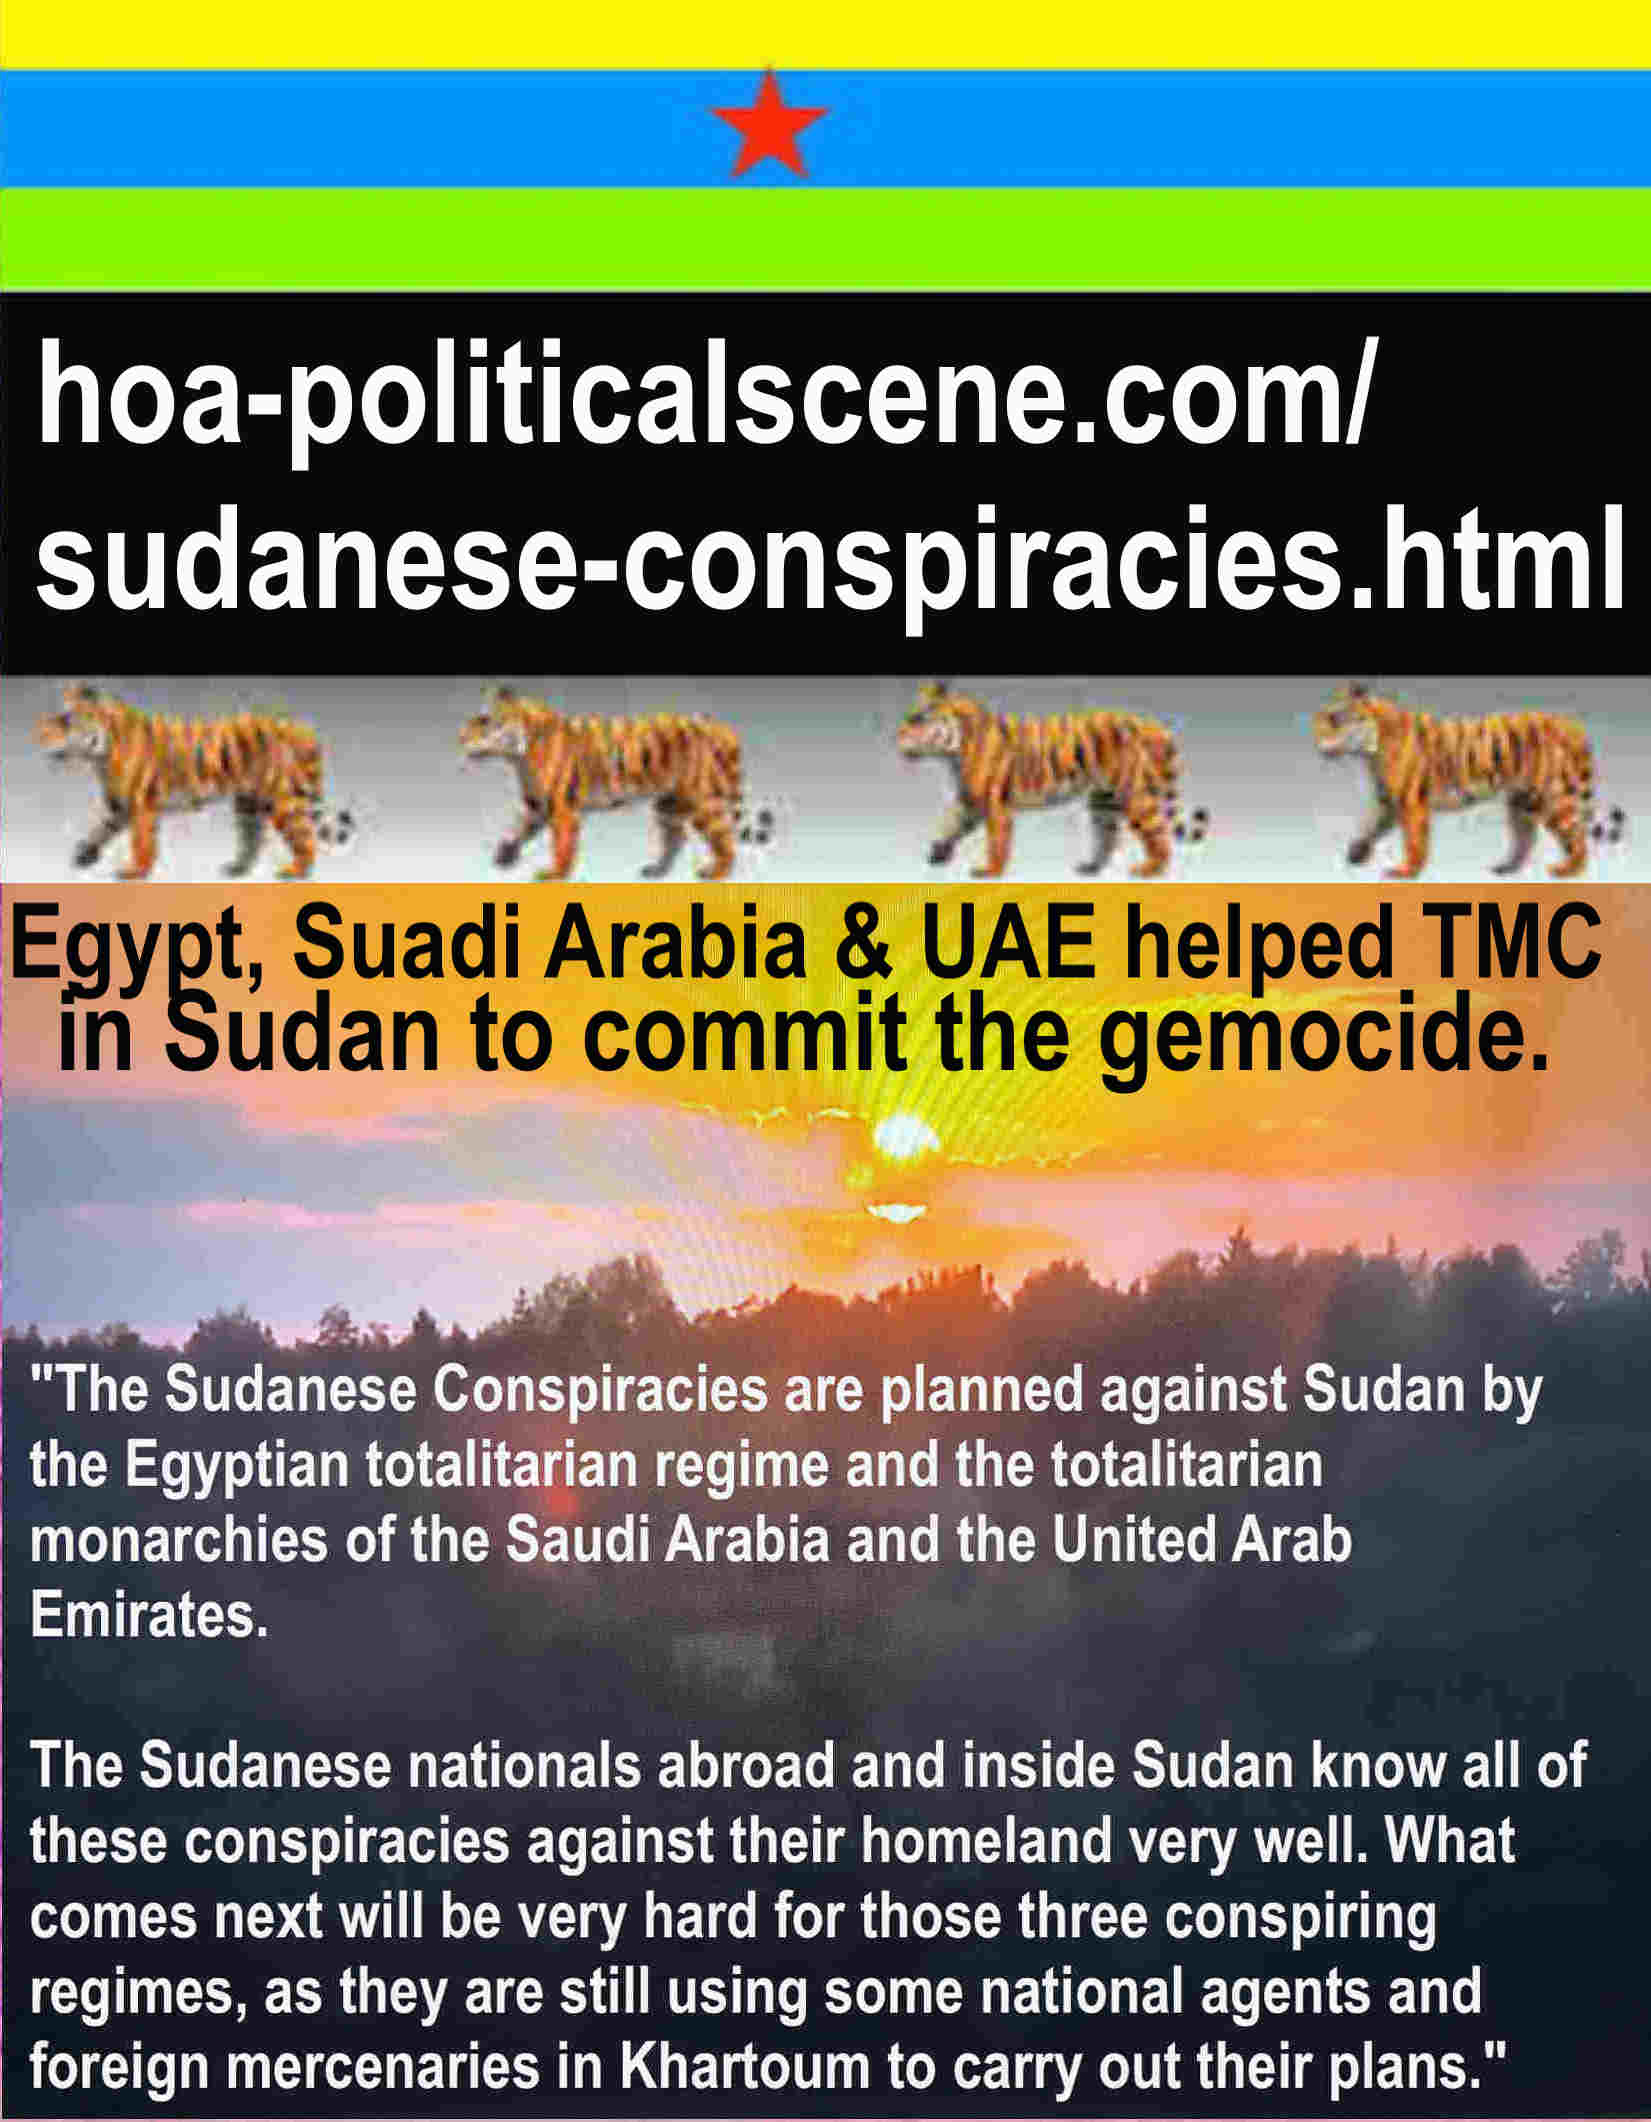 hoa-politicalscene.com/caos-mondiale.html - Caos Mondiale: Il popolo sudanese non riuscirà mai in nessuna rivoluzione senza avere i 3 meccanismi della rivoluzione progressista, ho pianificato.